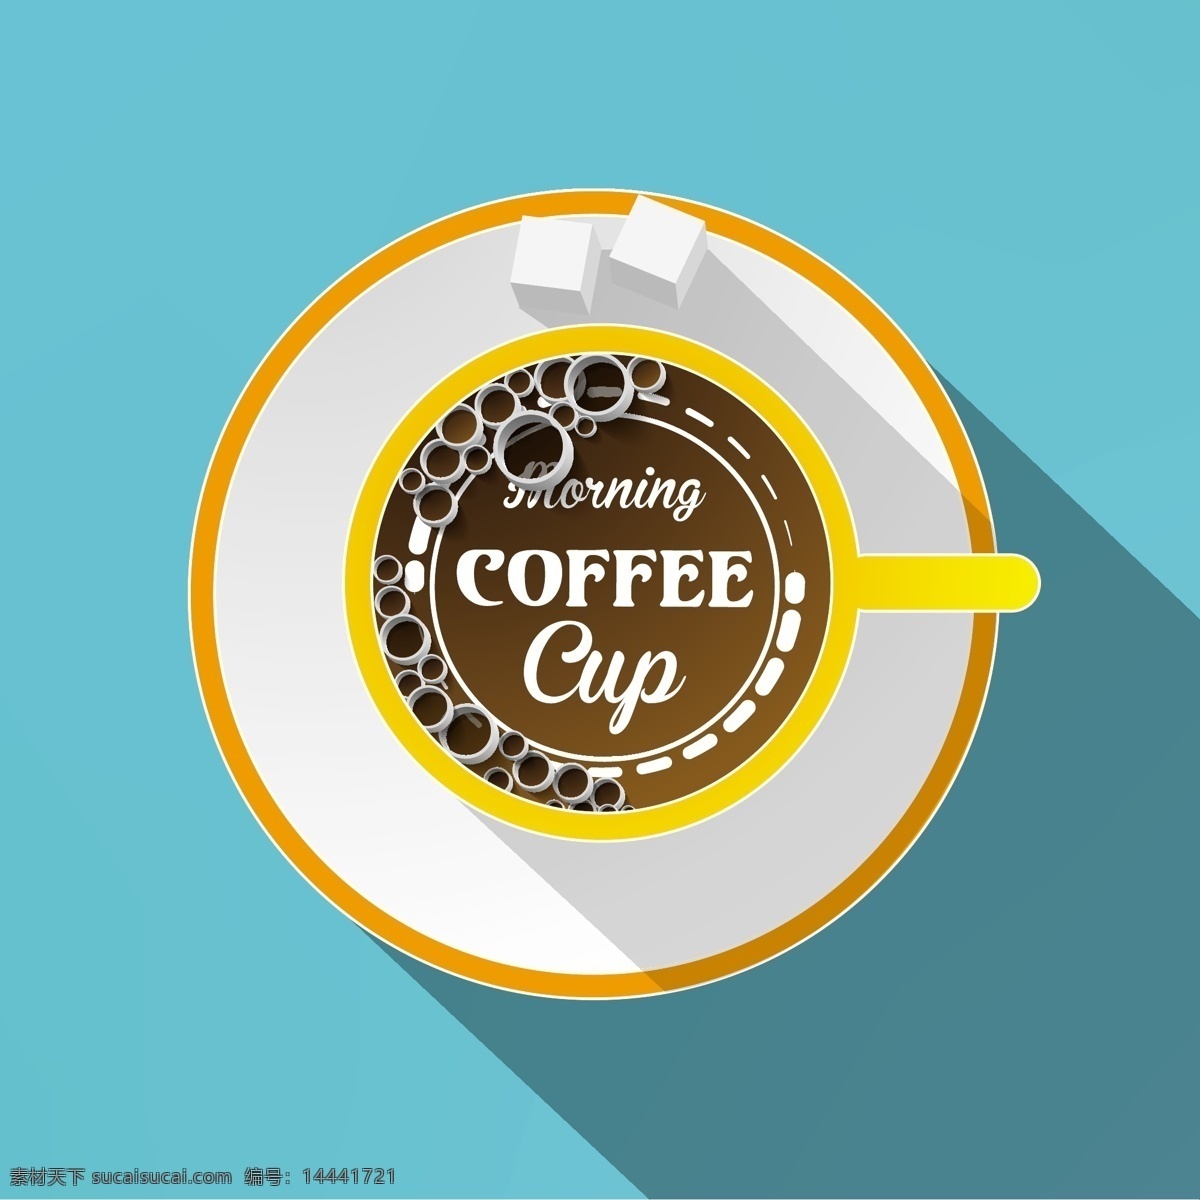 咖啡 图标 咖啡店 标志 咖啡设计 咖啡图标 咖啡标志 咖啡豆 咖啡元素 咖啡店图标 logo coffee 咖啡商标 vi icon 小图标 图标设计 logo设计 标志设计 标识设计 矢量设计 餐饮美食 生活百科 矢量